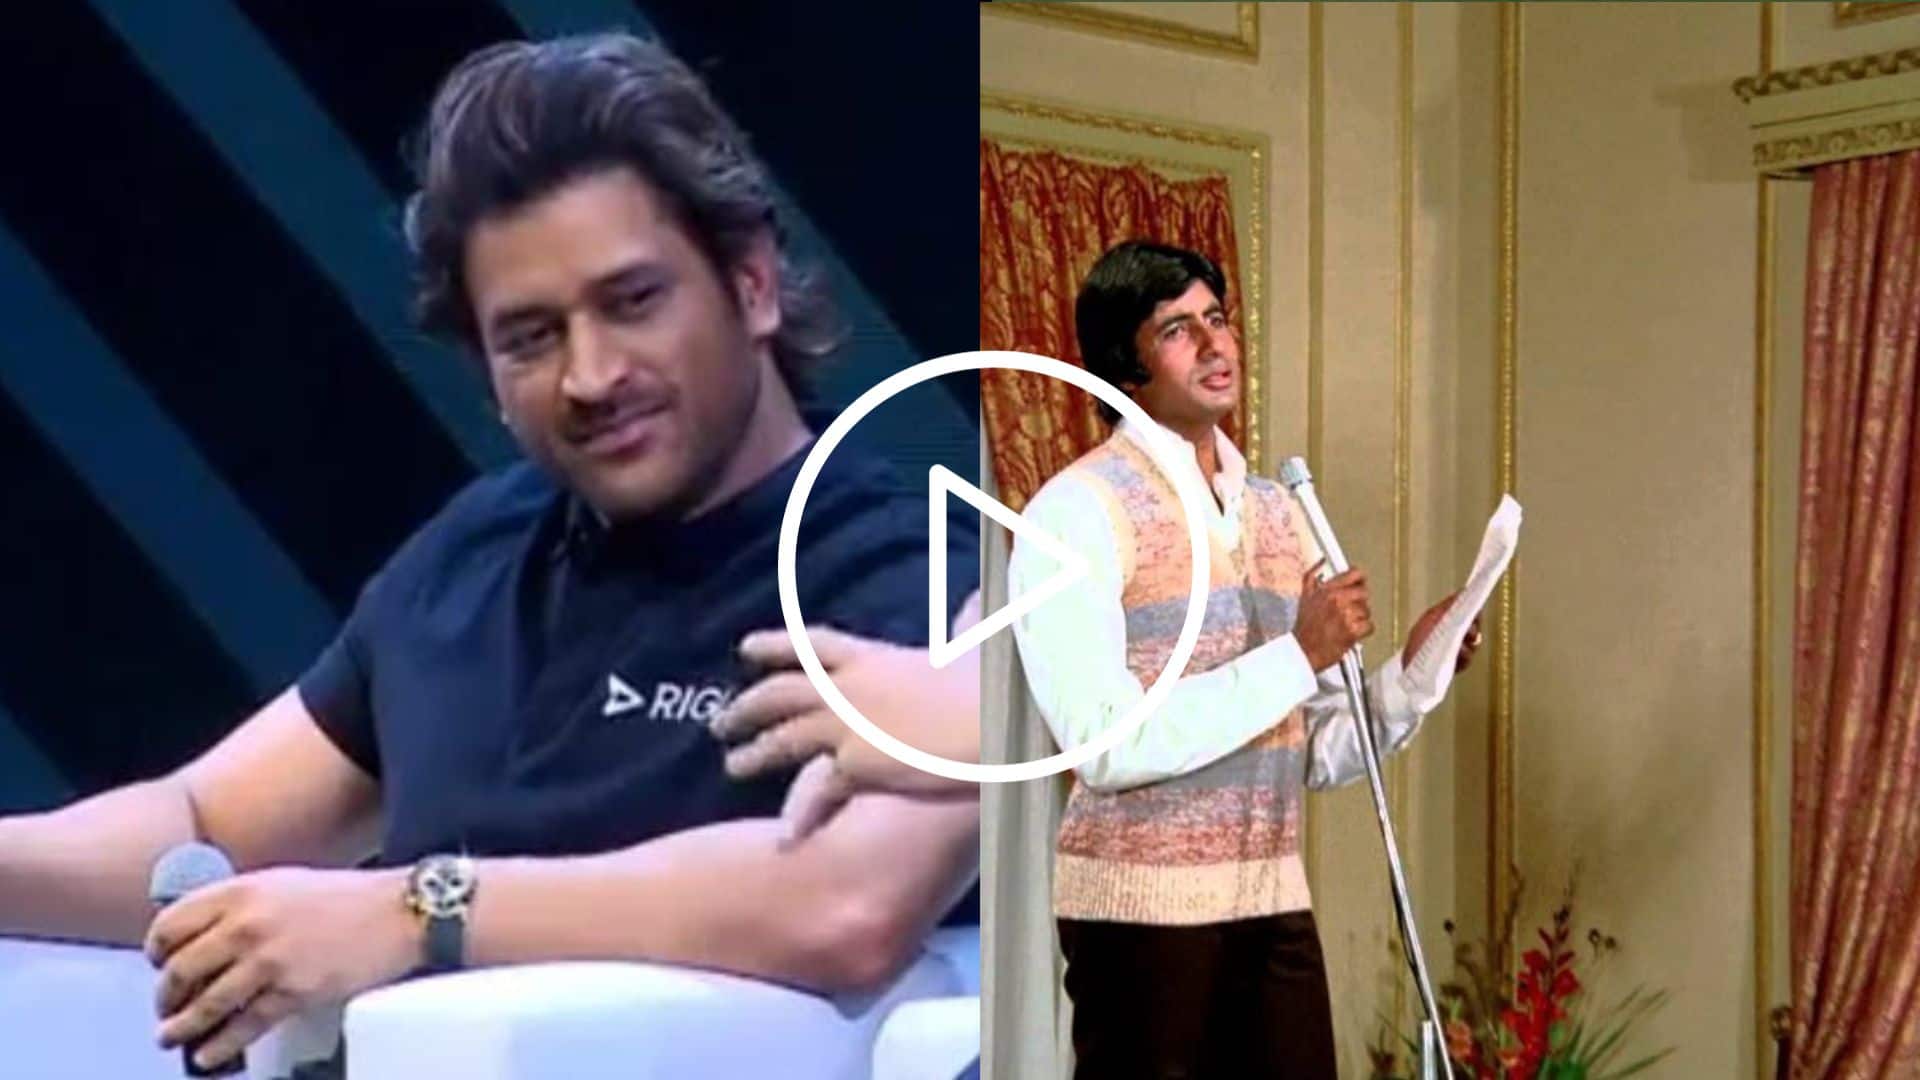 [WATCH] Viral Video Of MS Dhoni Singing 'Main Pal Do Pal Ka Shayar Hoon' At An Event